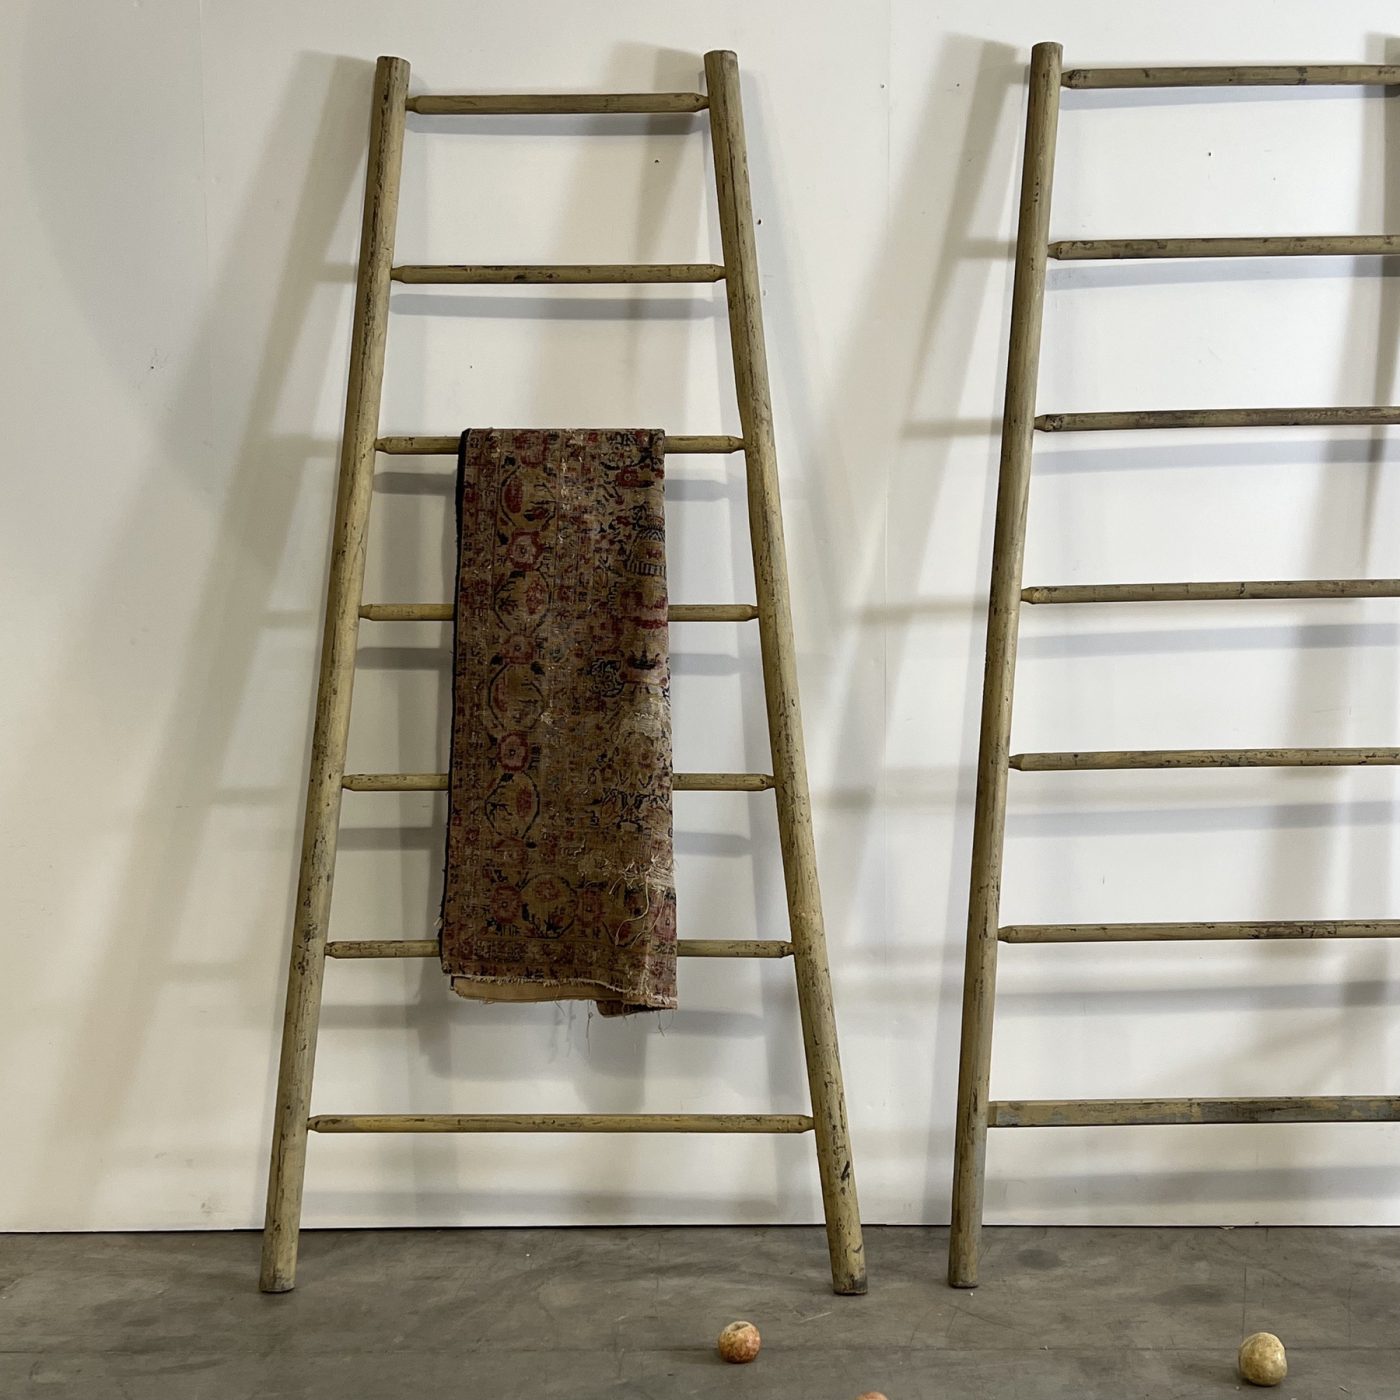 objet-vagabond-tall-ladders0003